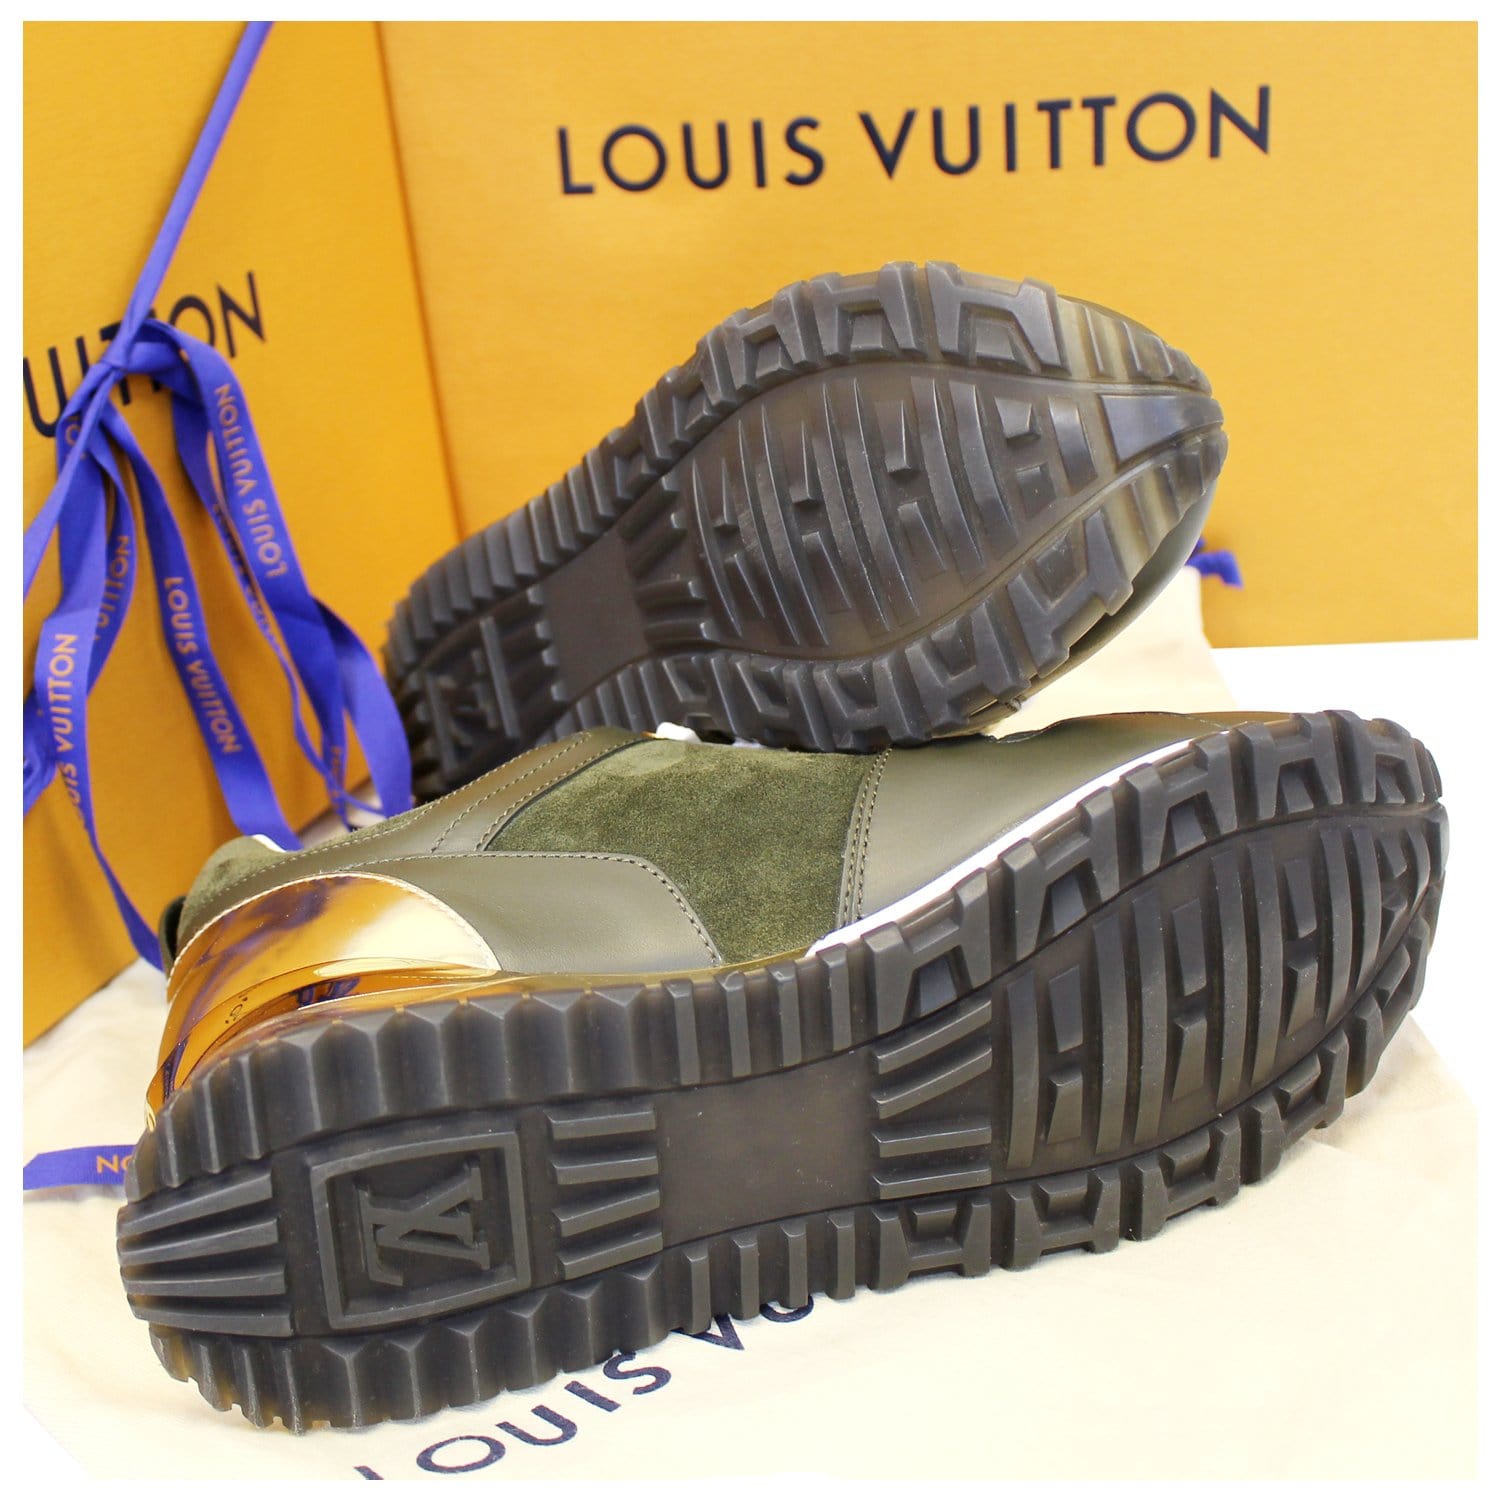 Run away trainers Louis Vuitton Khaki size 37 EU in Suede - 31509441